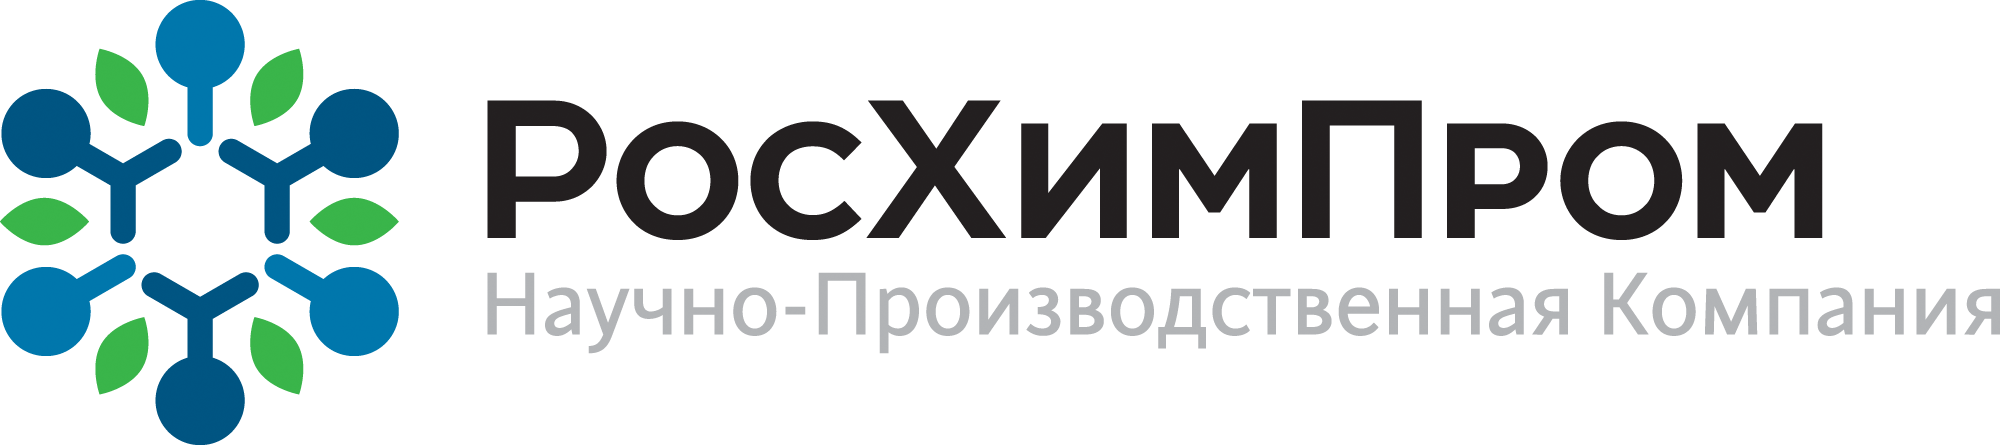 ООО Росхимпром. Научно производственная компания. Новая перевозочная логотип. Логотипы научно-производственных компаний.